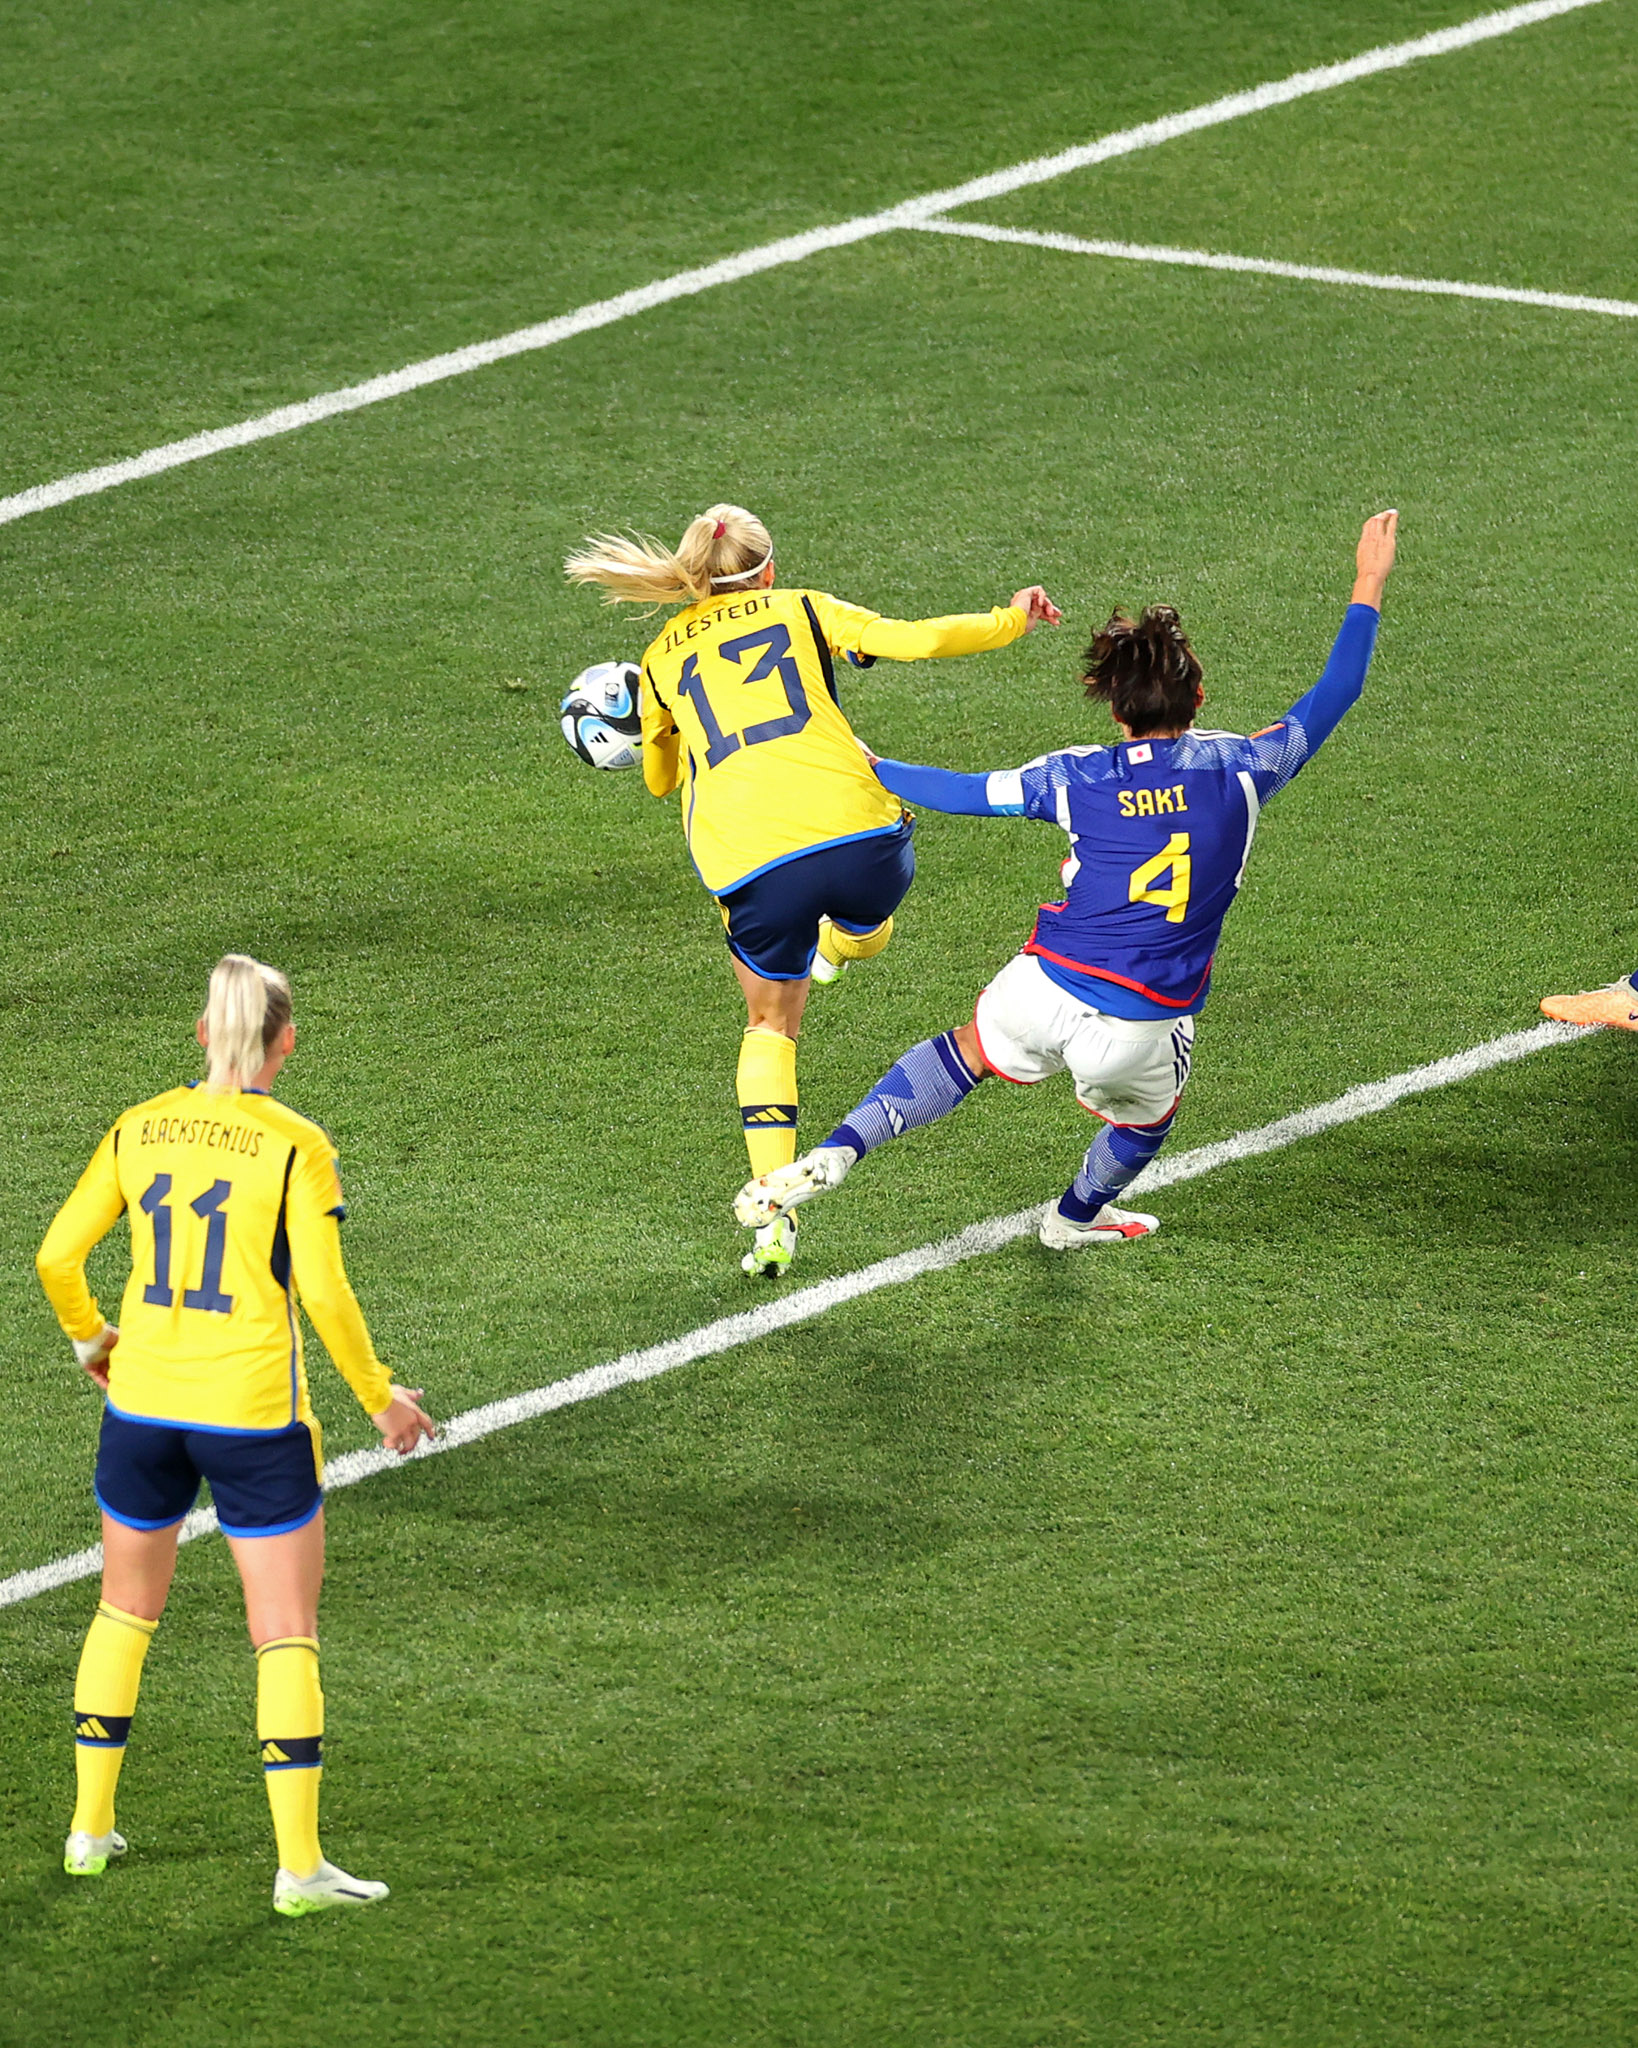 Tuyển nữ Thụy Điển vượt lên dẫn trước trong hiệp 1. Ảnh: FIFA